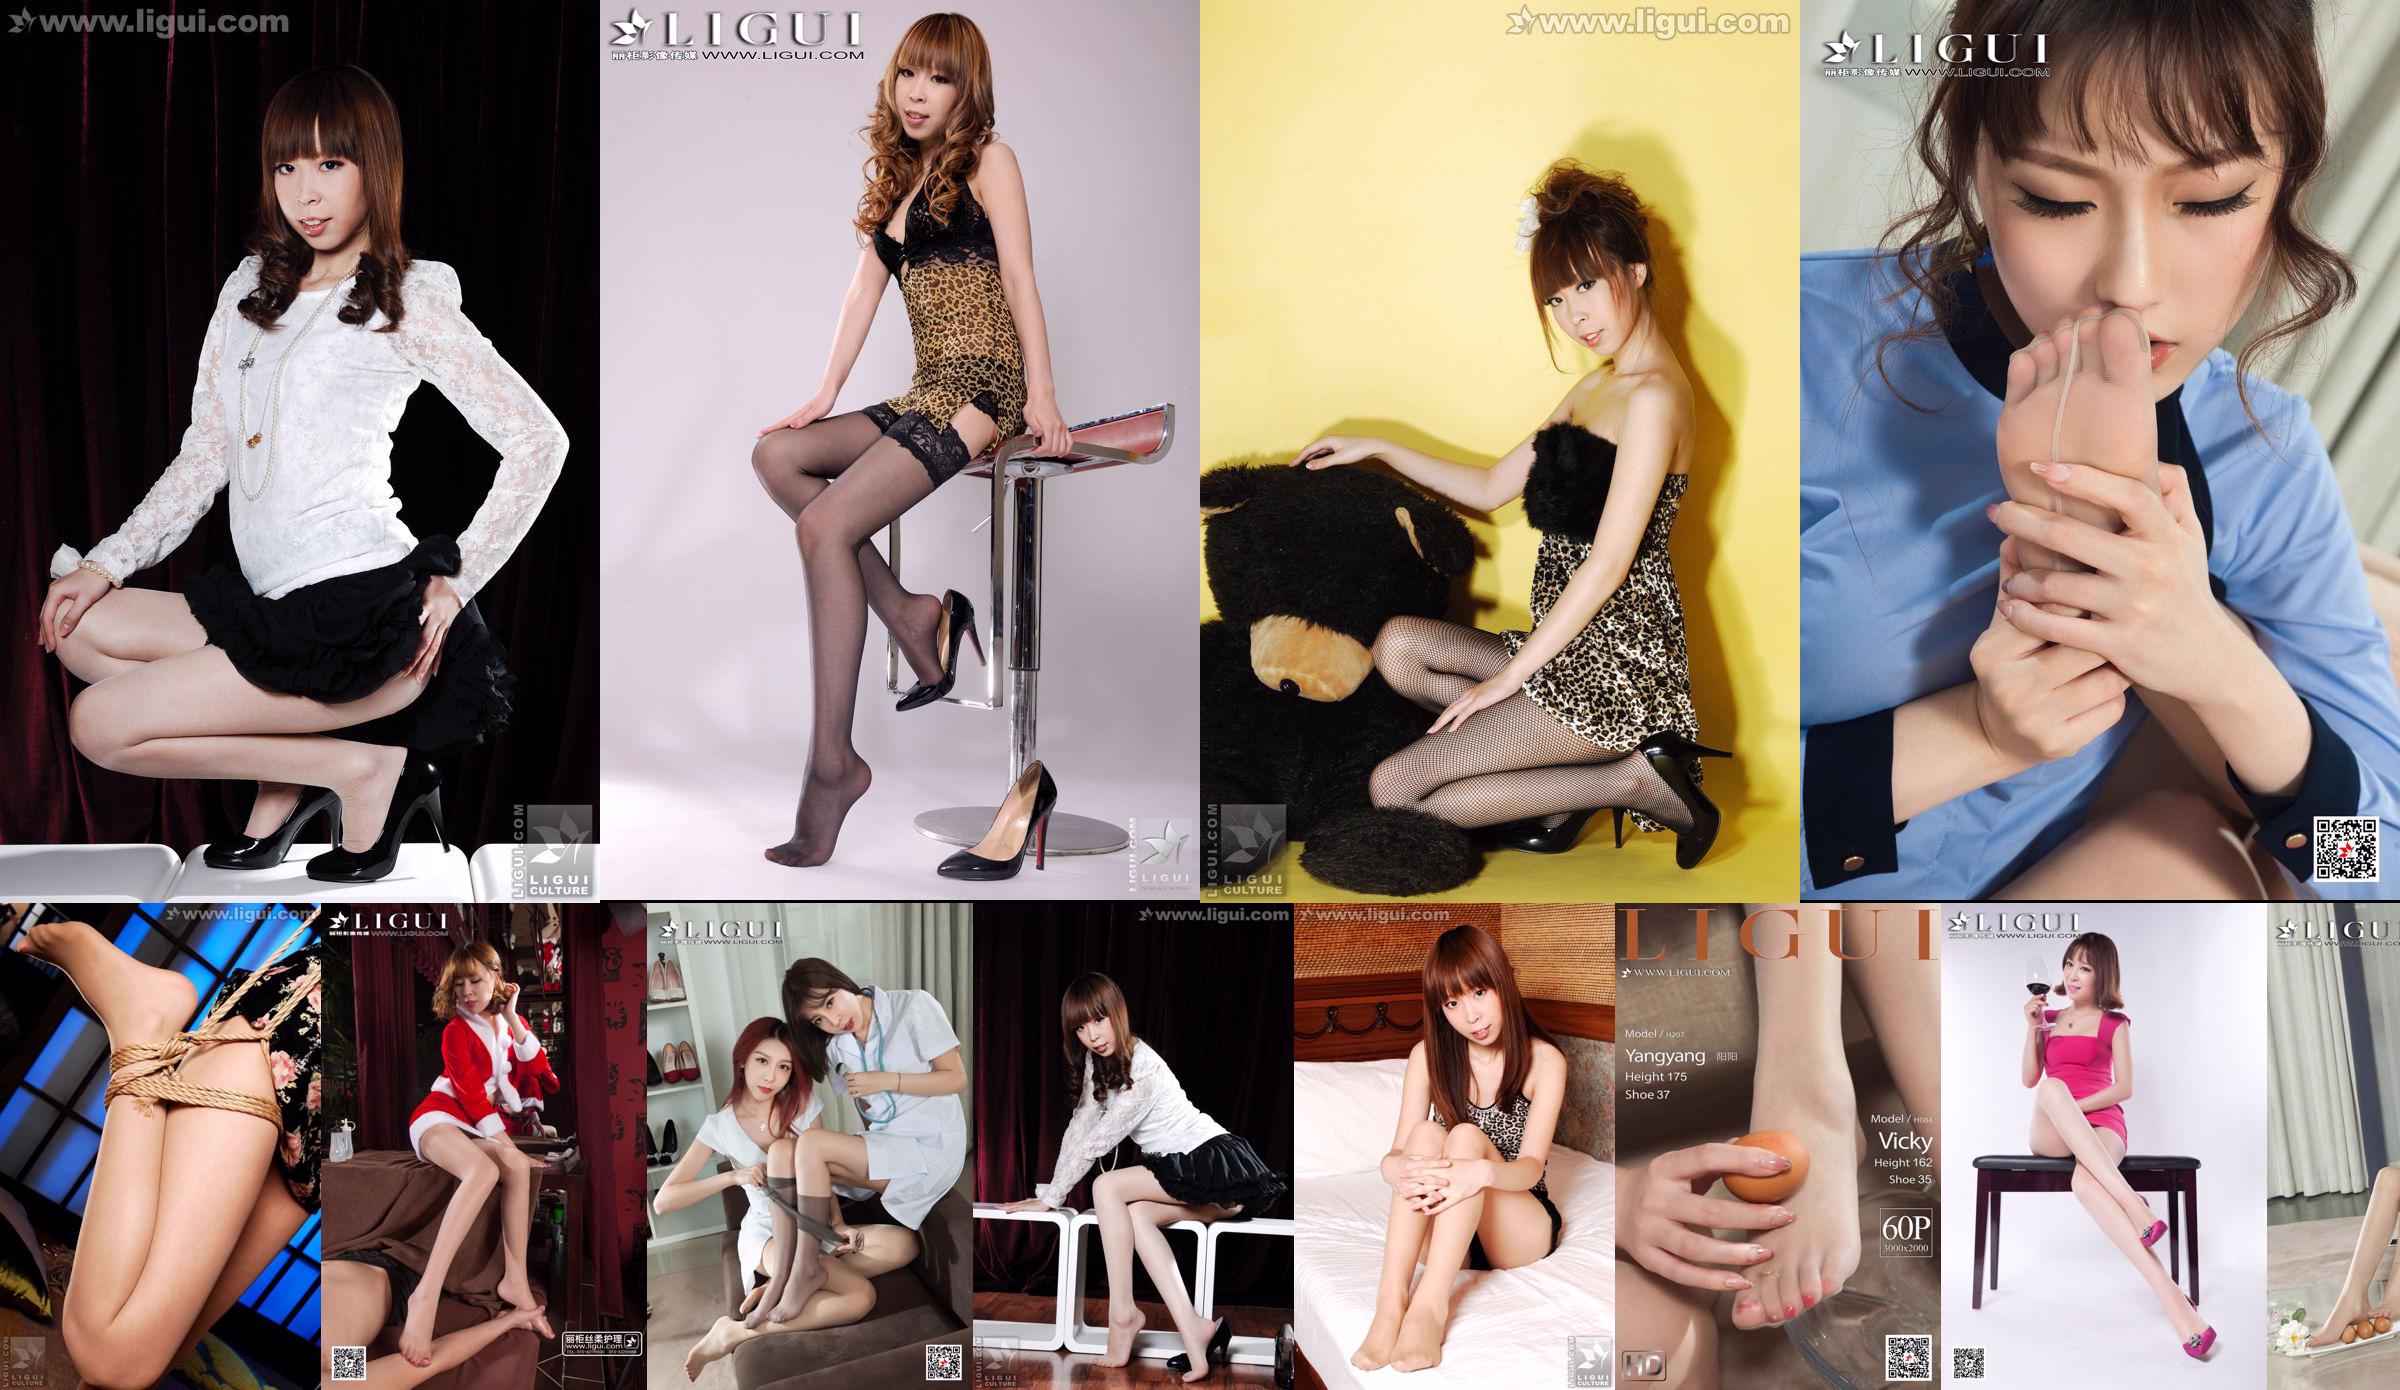 Người mẫu Vicky "New Year F Festival Sling Dress Silk Foot Show" [丽 柜 LiGui] Ảnh chân dài ngọc nữ No.21fadc Trang 5